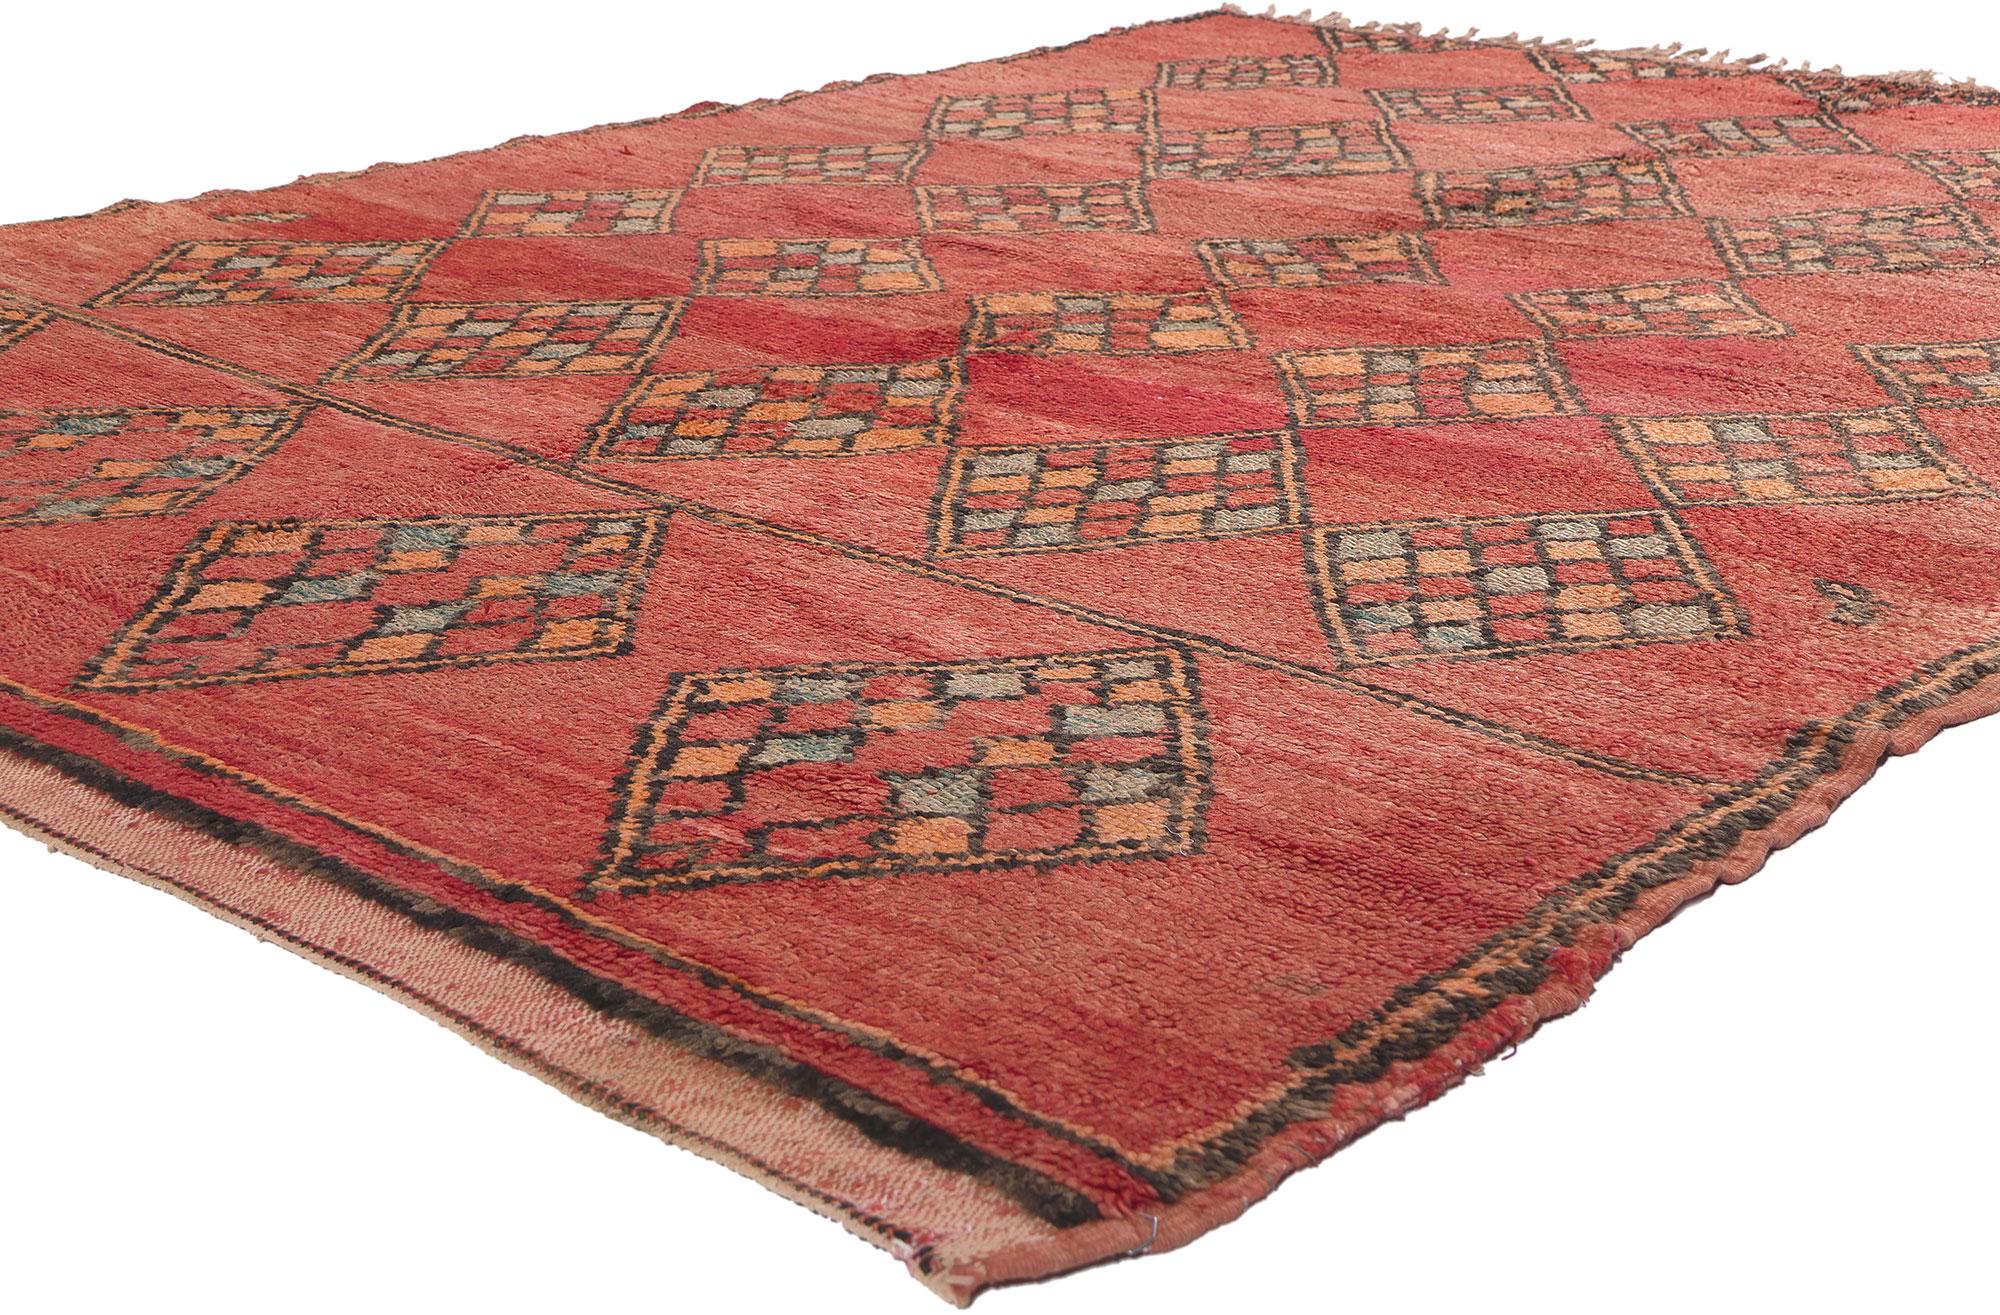 20171 Vintage Rot Boujad Marokkanischer Teppich, 05'10 x 08'05. Entdecken Sie im Reich des böhmischen Einrichtungsstils die bezaubernde Verschmelzung mit dem nomadischen Charme dieses marokkanischen Teppichs aus handgeknüpfter Wolle im